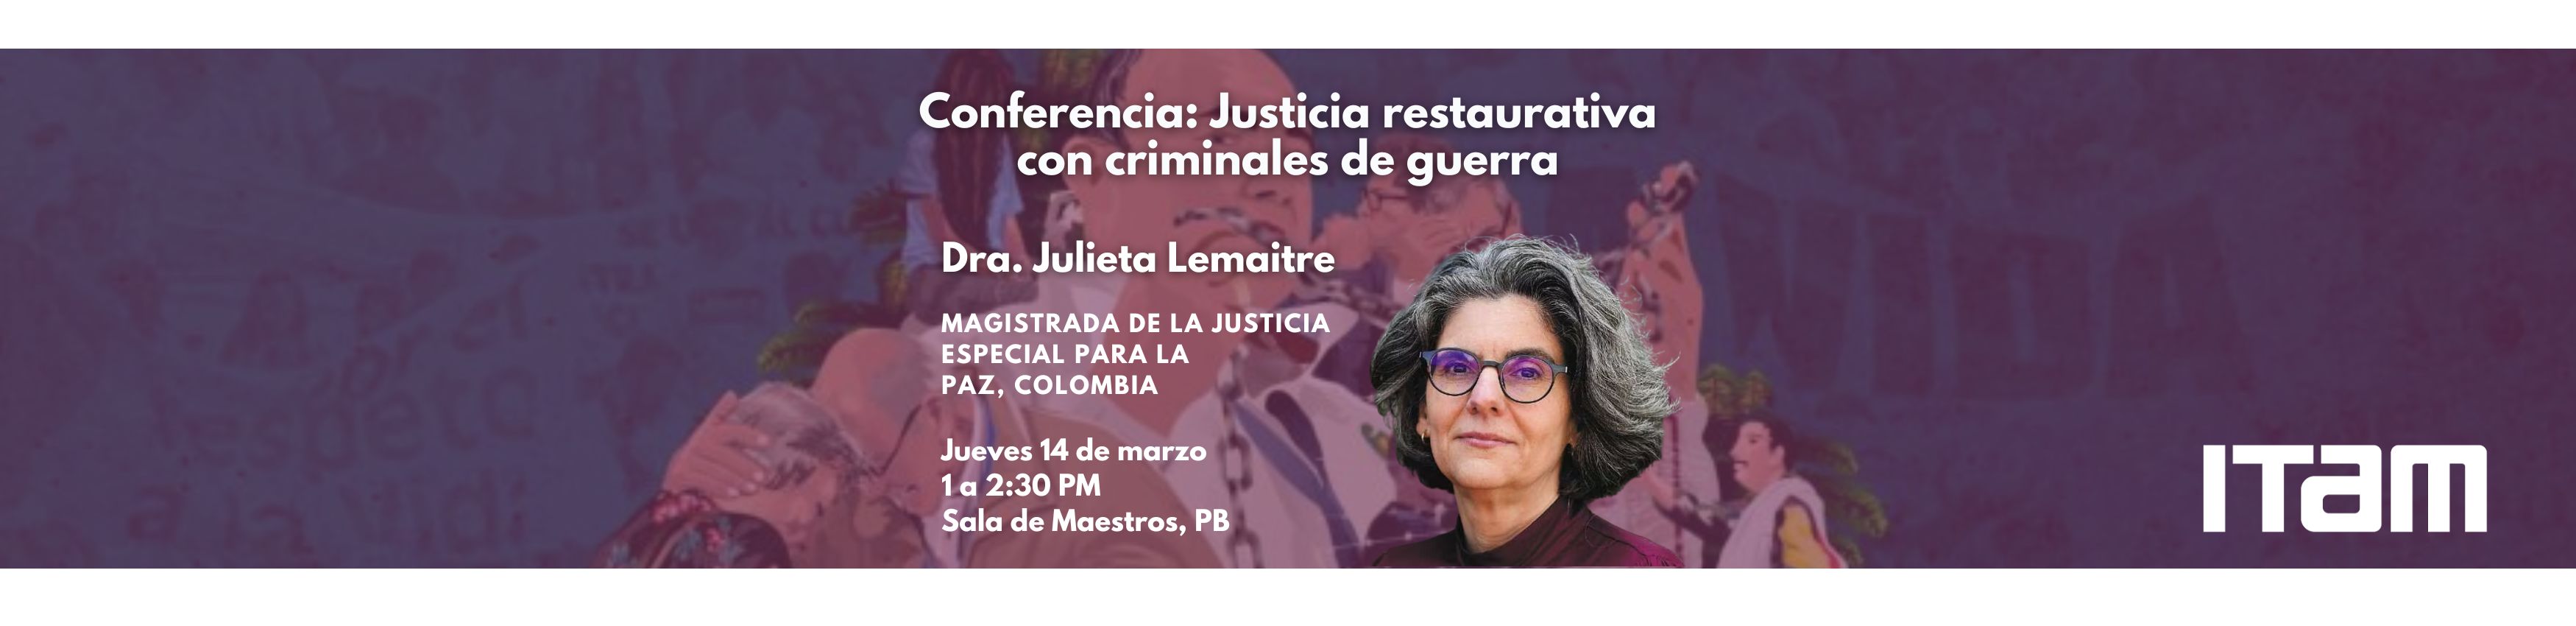 Conferencia de la Dra. Julieta Lemaitre